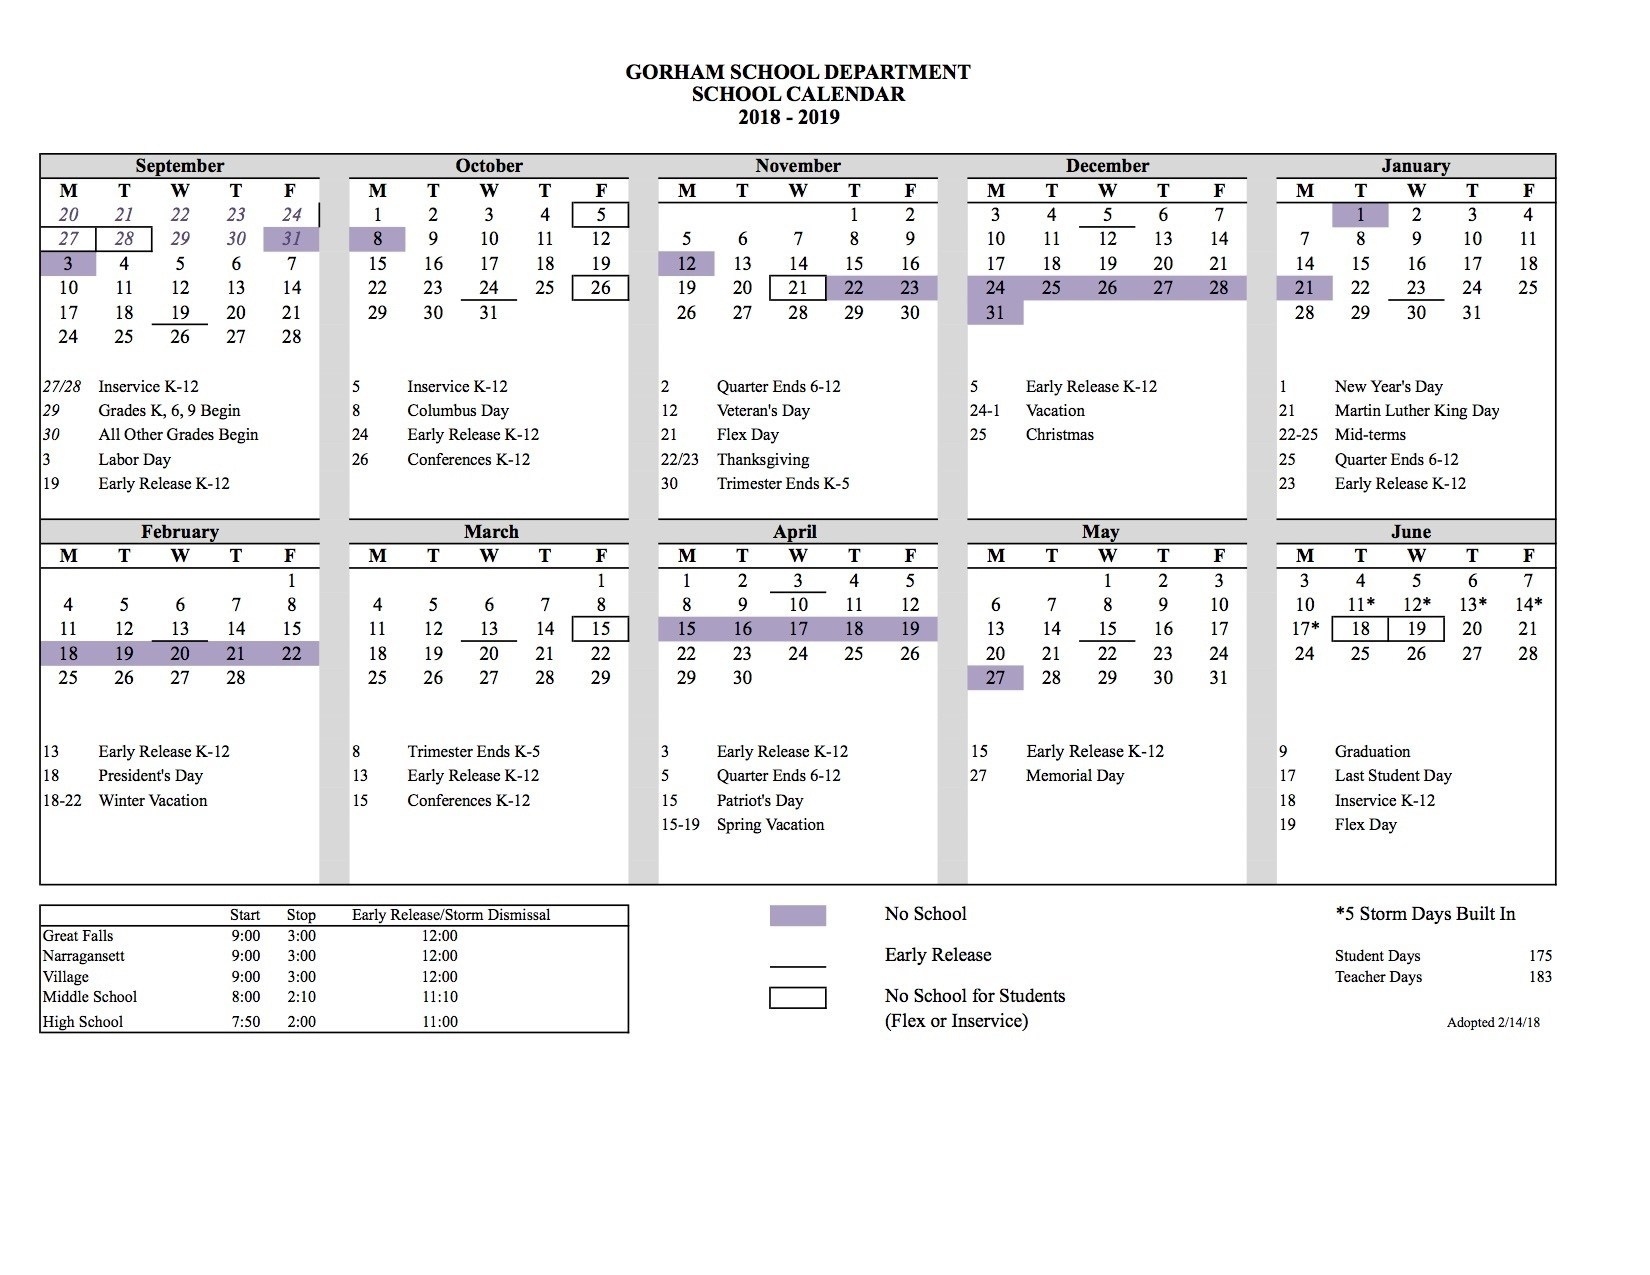 School Calendar – District Information – Gorham School District Sau 6 School Calendar